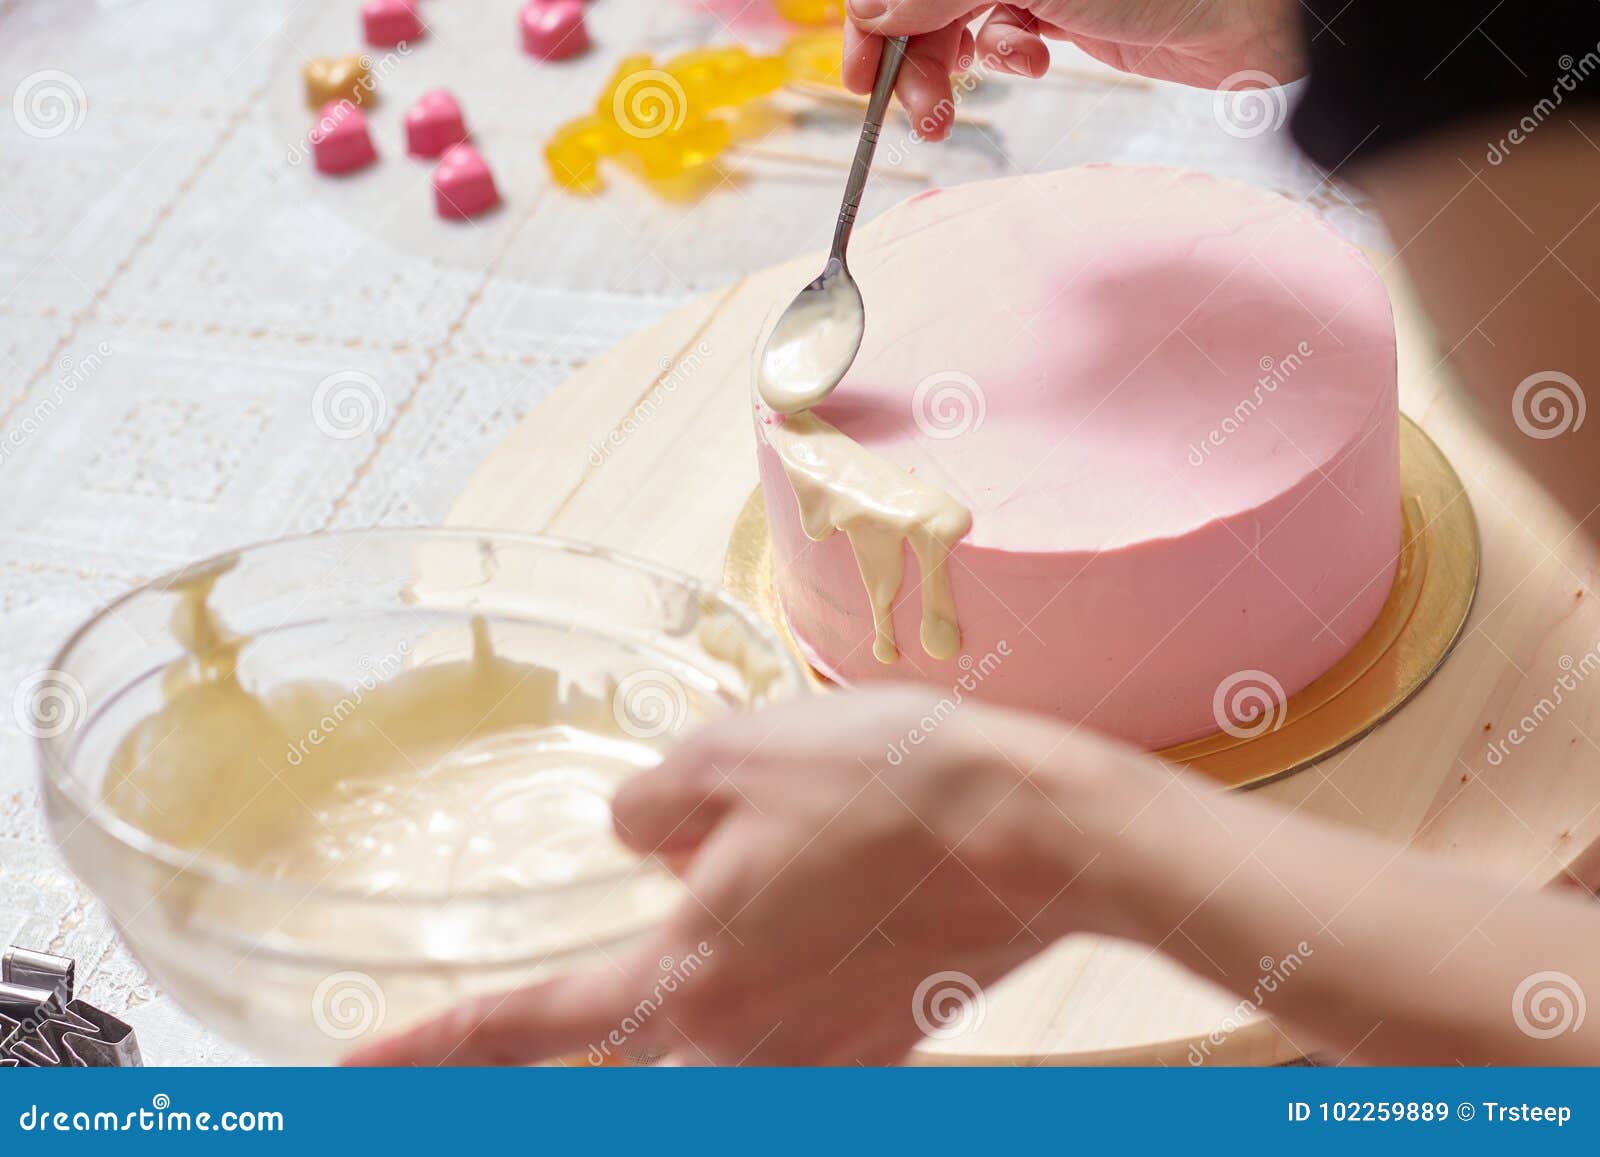 Training Cream Cake Decorating Master Class Stock Image - Image of ...